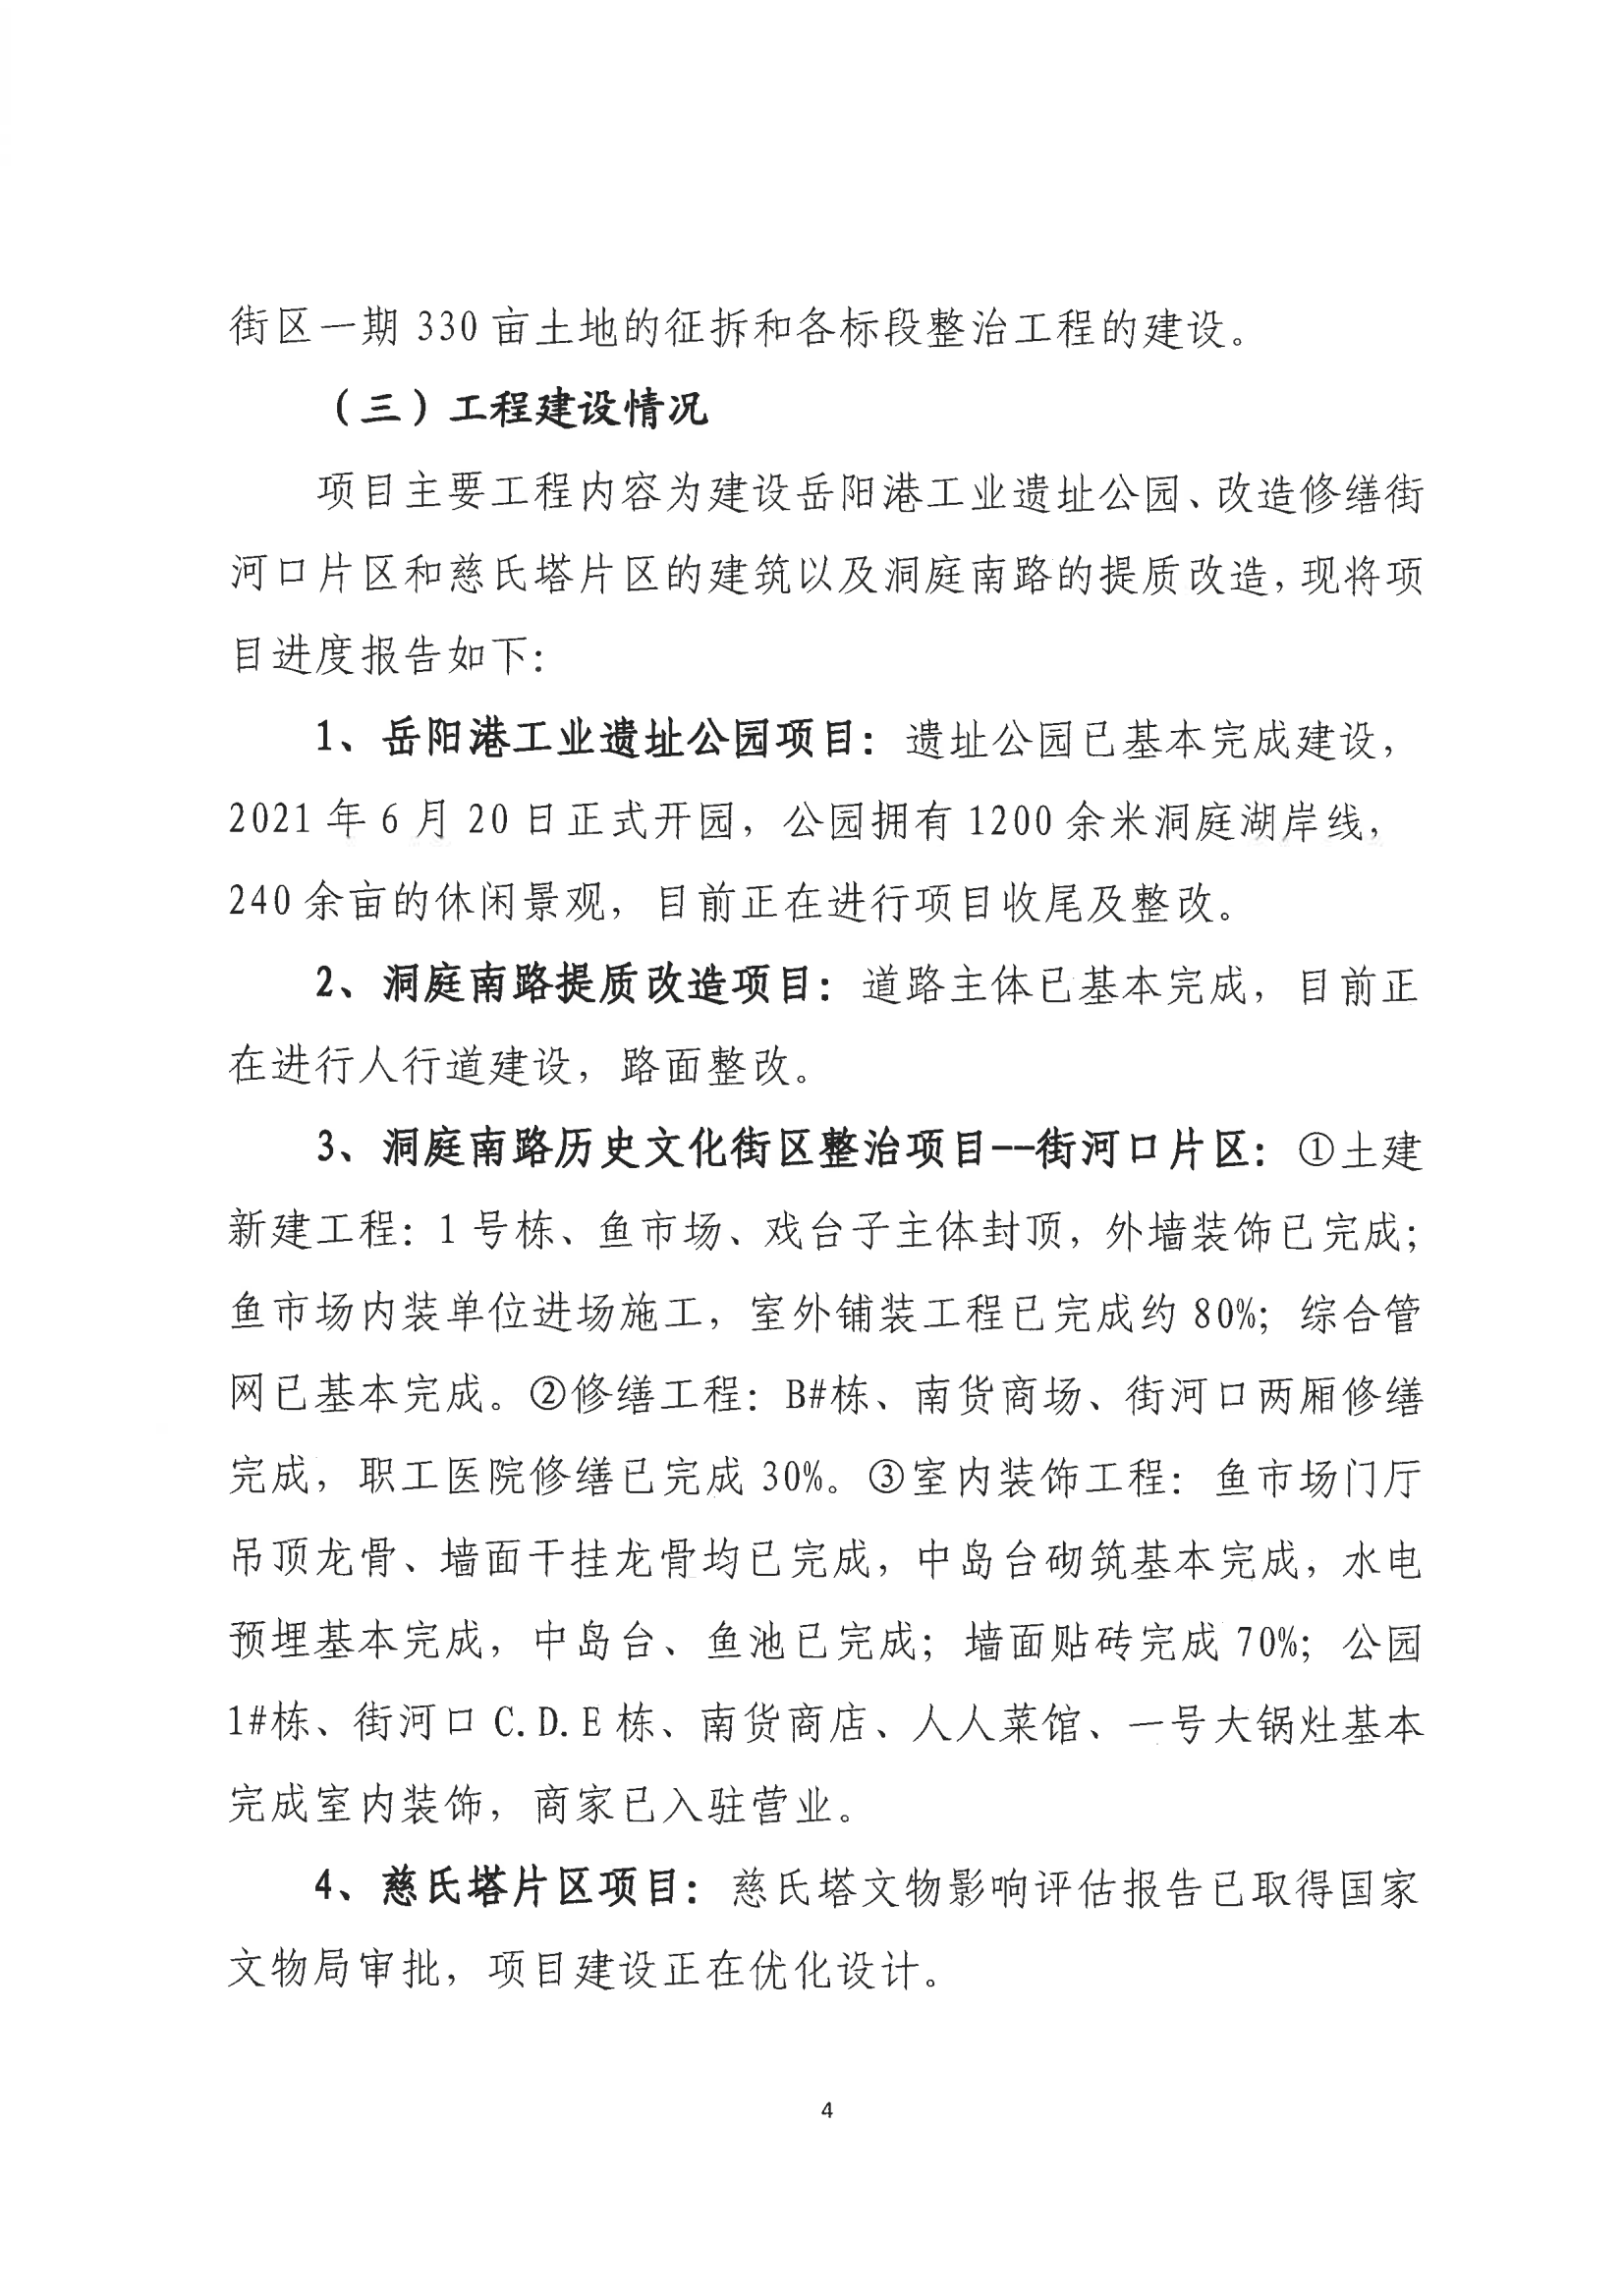 001号提案关于岳阳市政协九届一次会议第001号提案的回复(1)_03.png